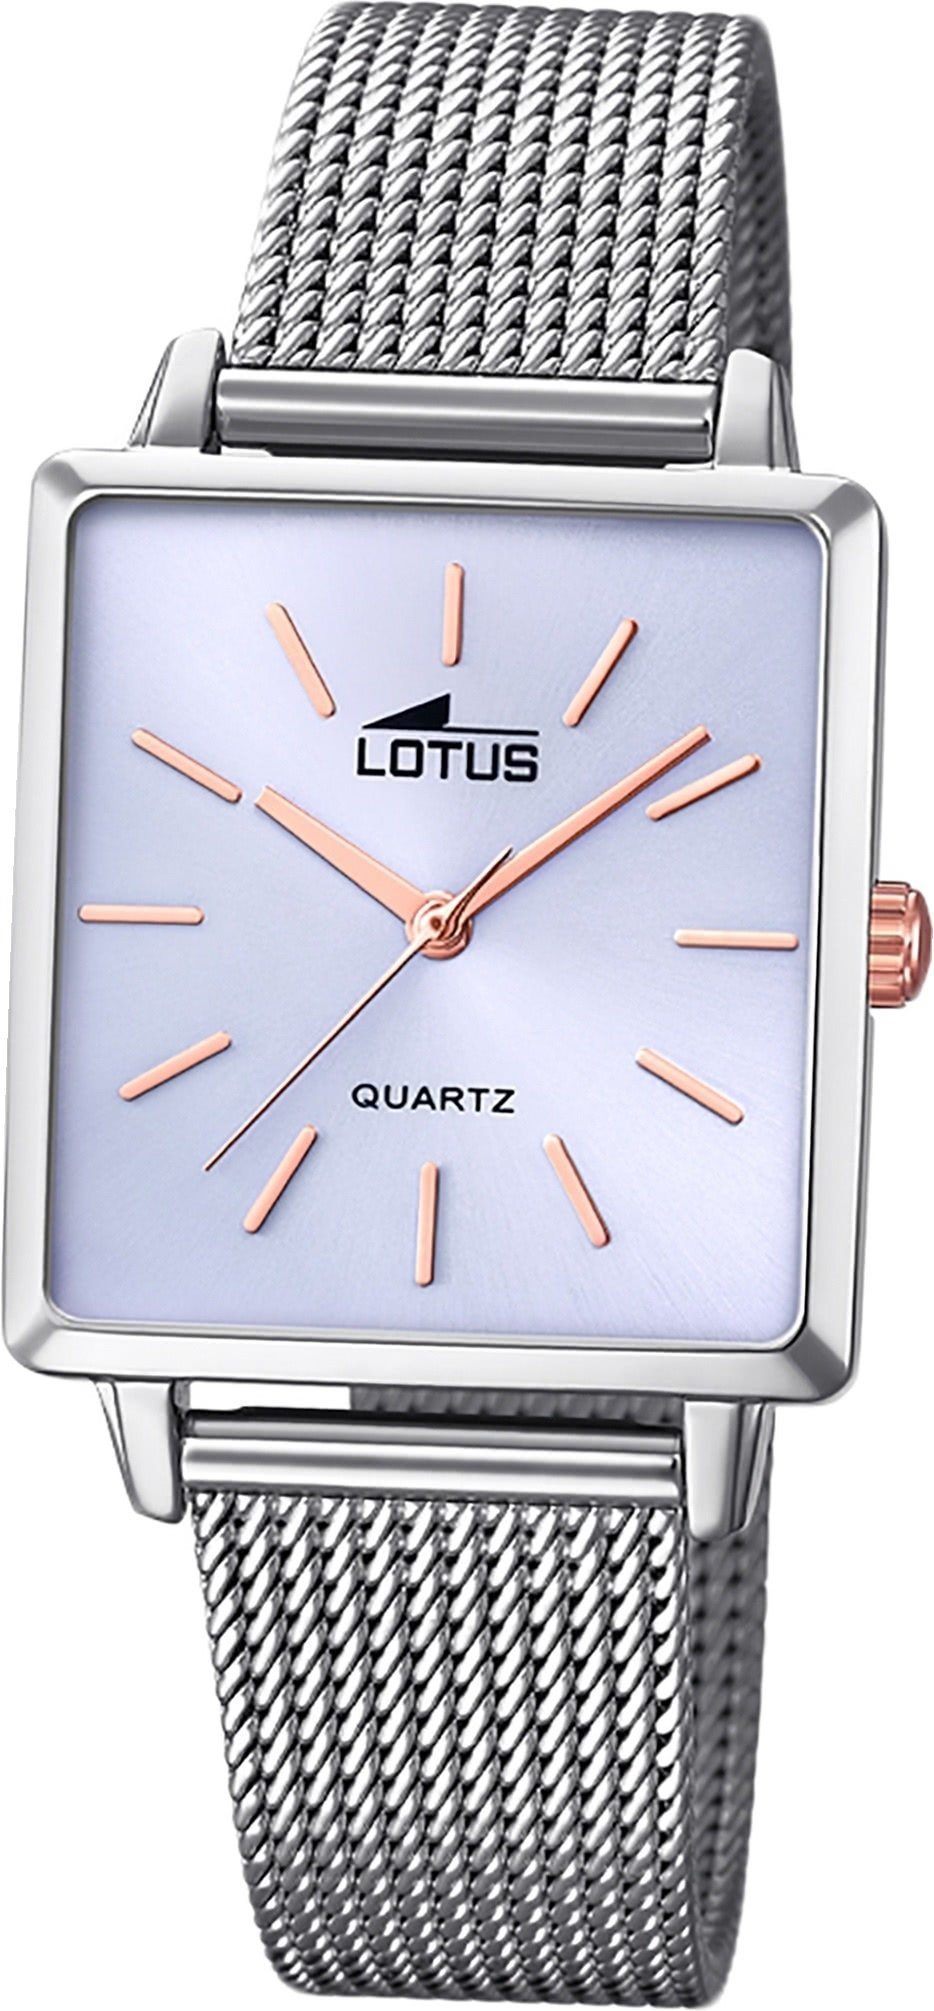 Lotus Quarzuhr LOTUS Edelstahl Damen Uhr 18718/3, Damenuhr mit Edelstahlarmband, eckiges Gehäuse, klein (ca. 27mm), Fash